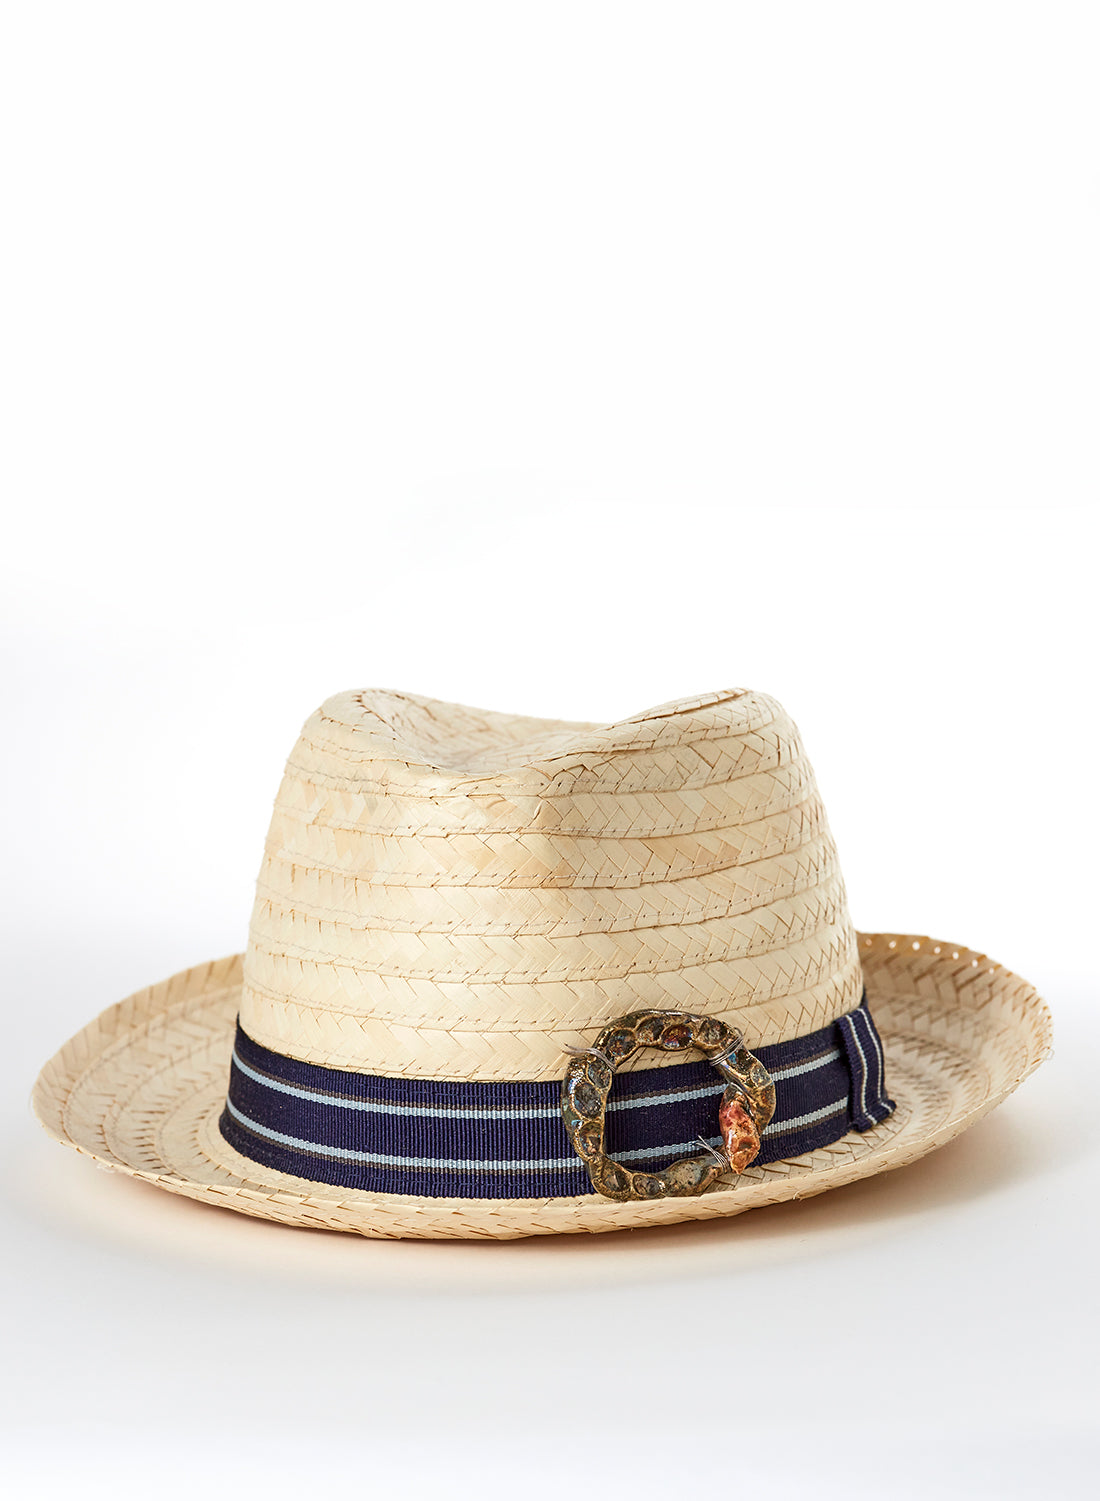 Cappello in palma naturale e accessorio gioiello in ceramica Raku oro